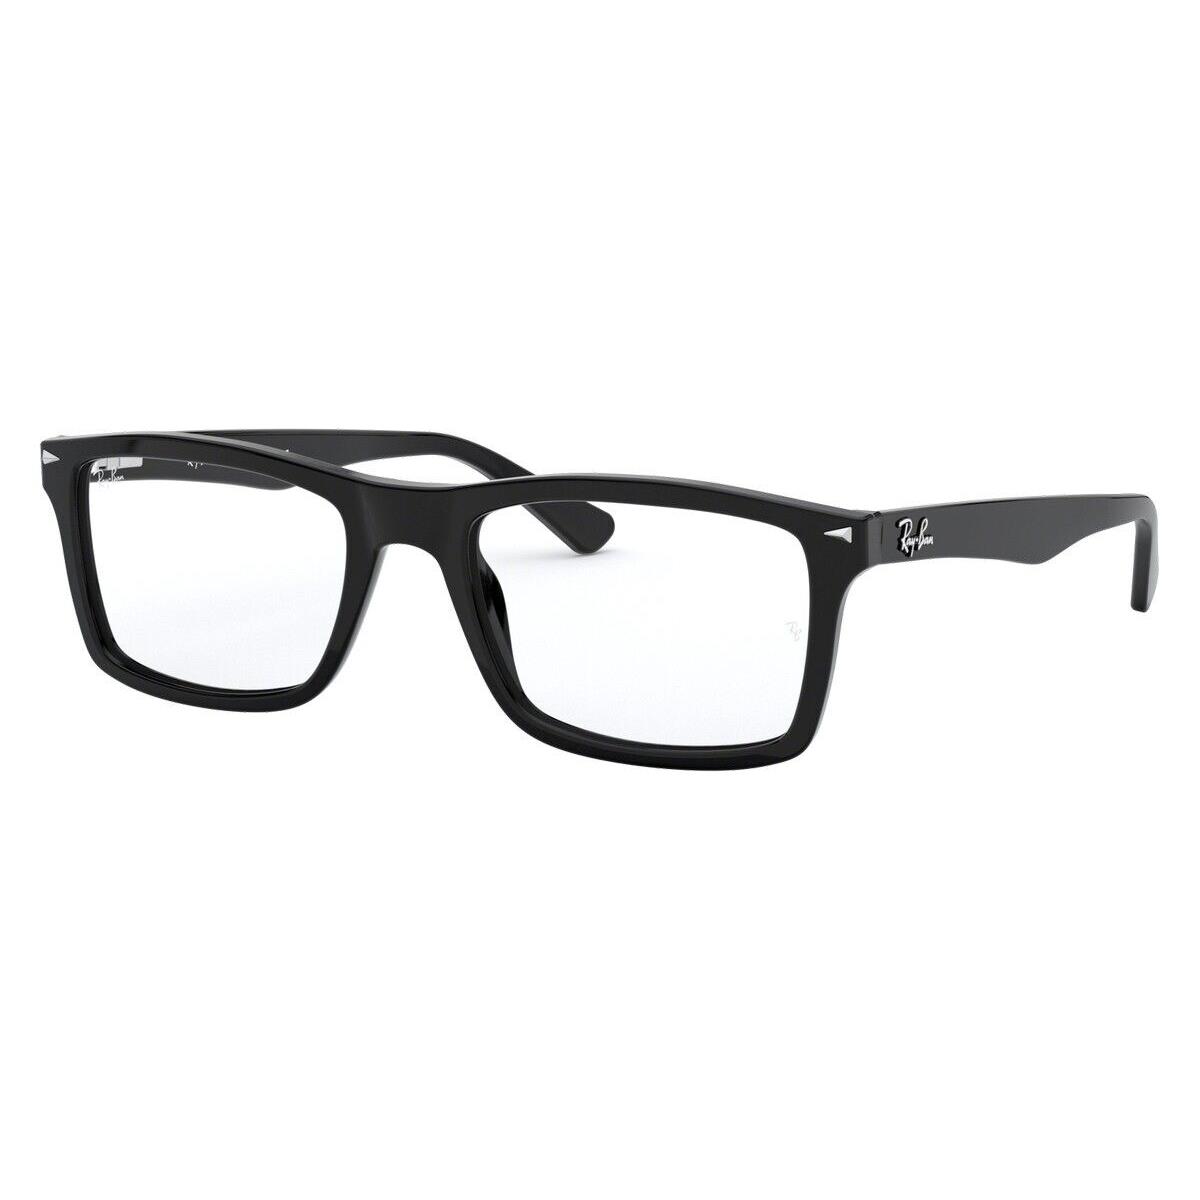 Ray-ban 0RX5287 Eyeglasses RX Unisex Black Square 54mm